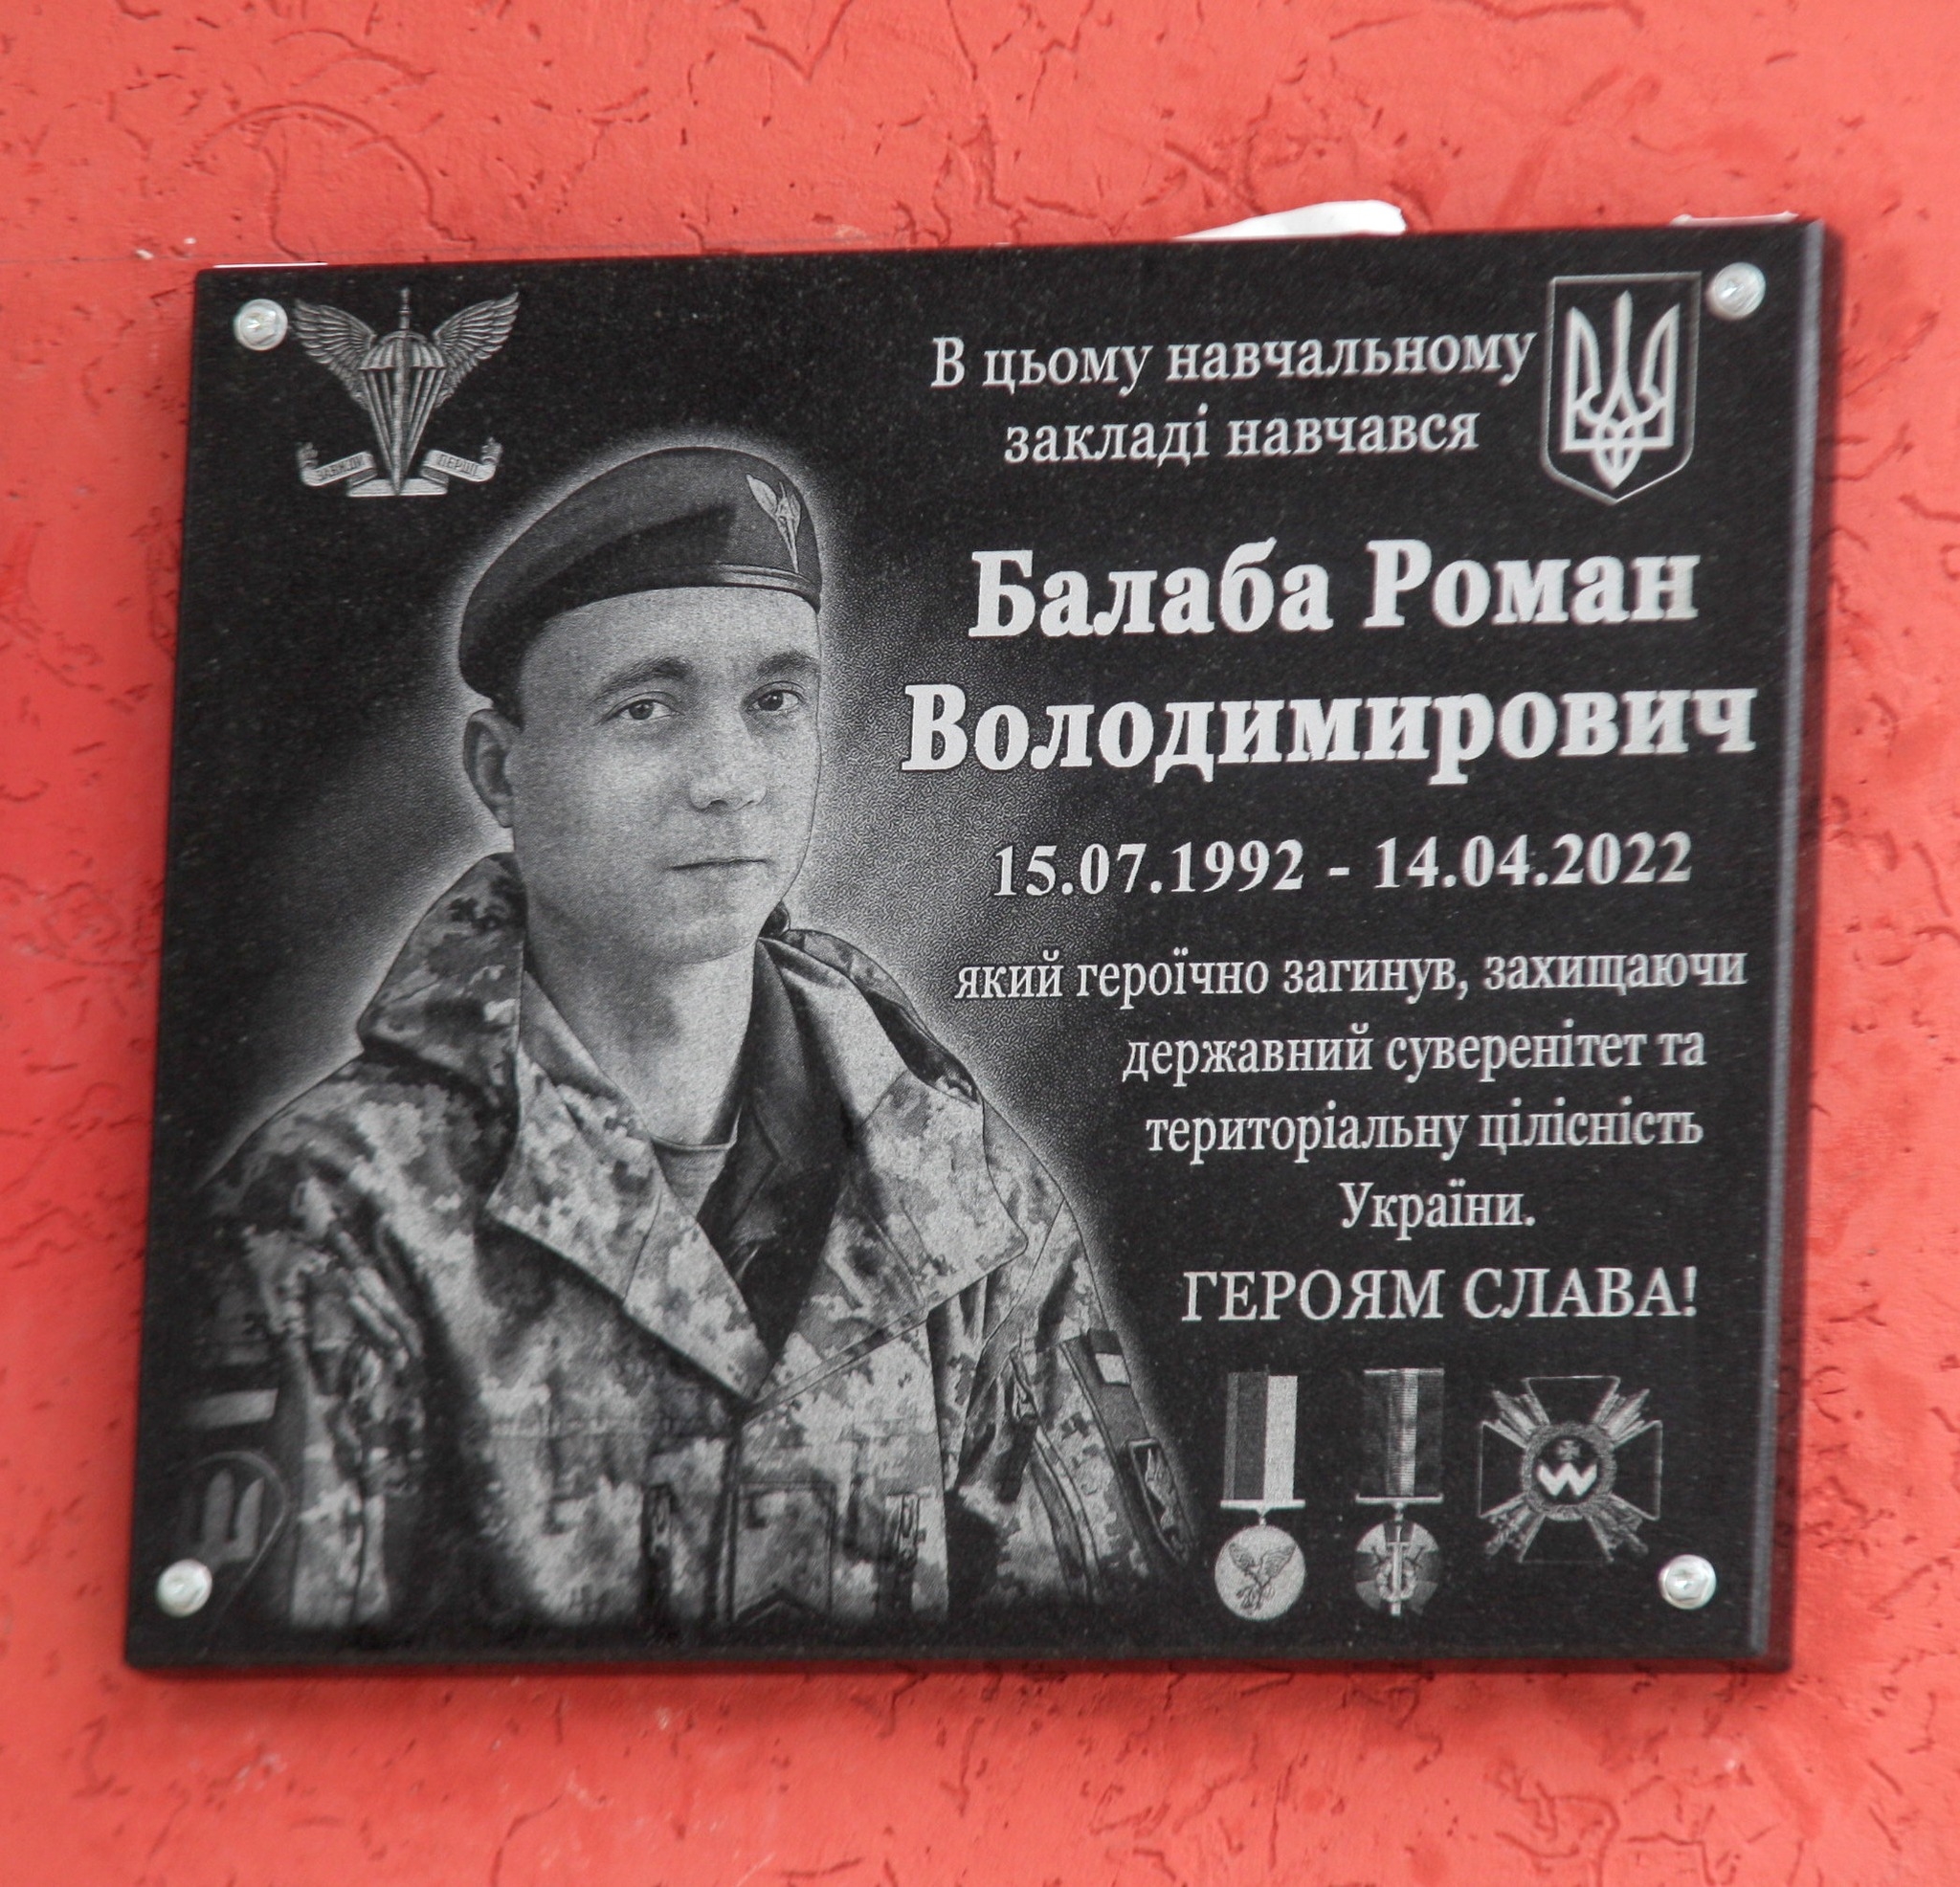 У Вінниці відкрили меморіальну дошку на честь Героя Романа Балаби